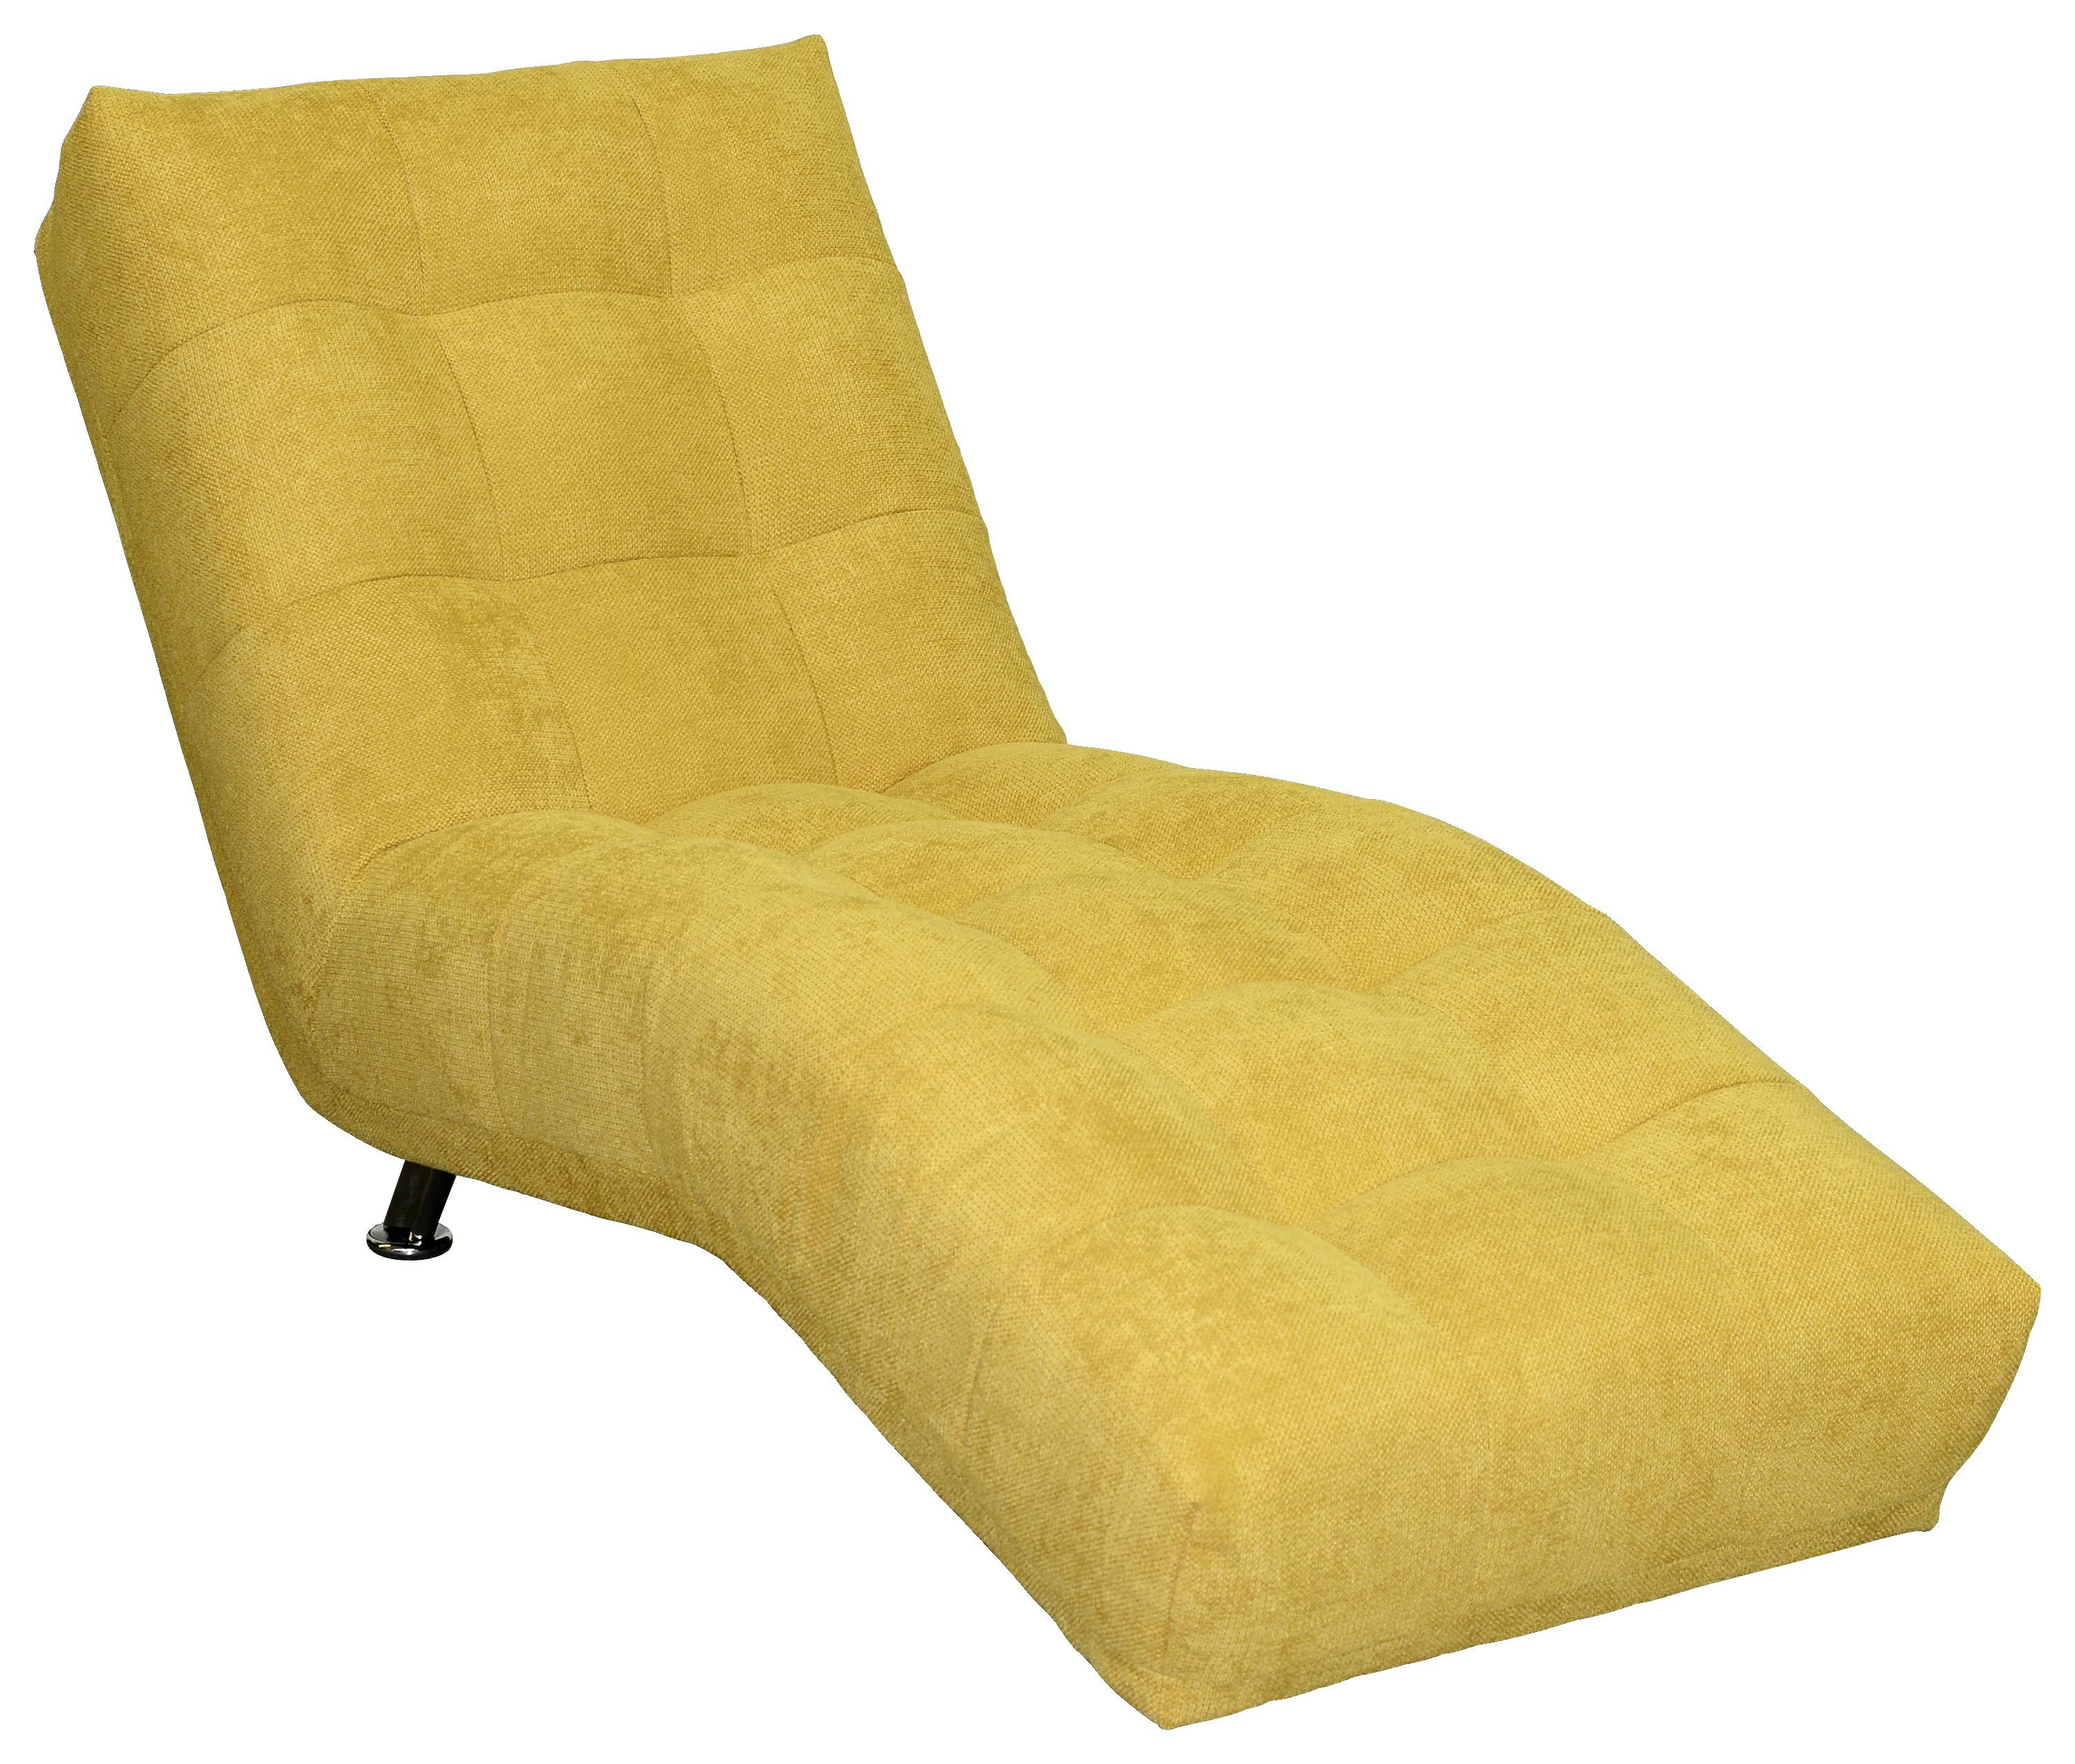 Relaxační Lehátko Isabella, Tmavě Žluté - tmavě žlutá/barvy chromu, Moderní, textil (68/88/164cm)